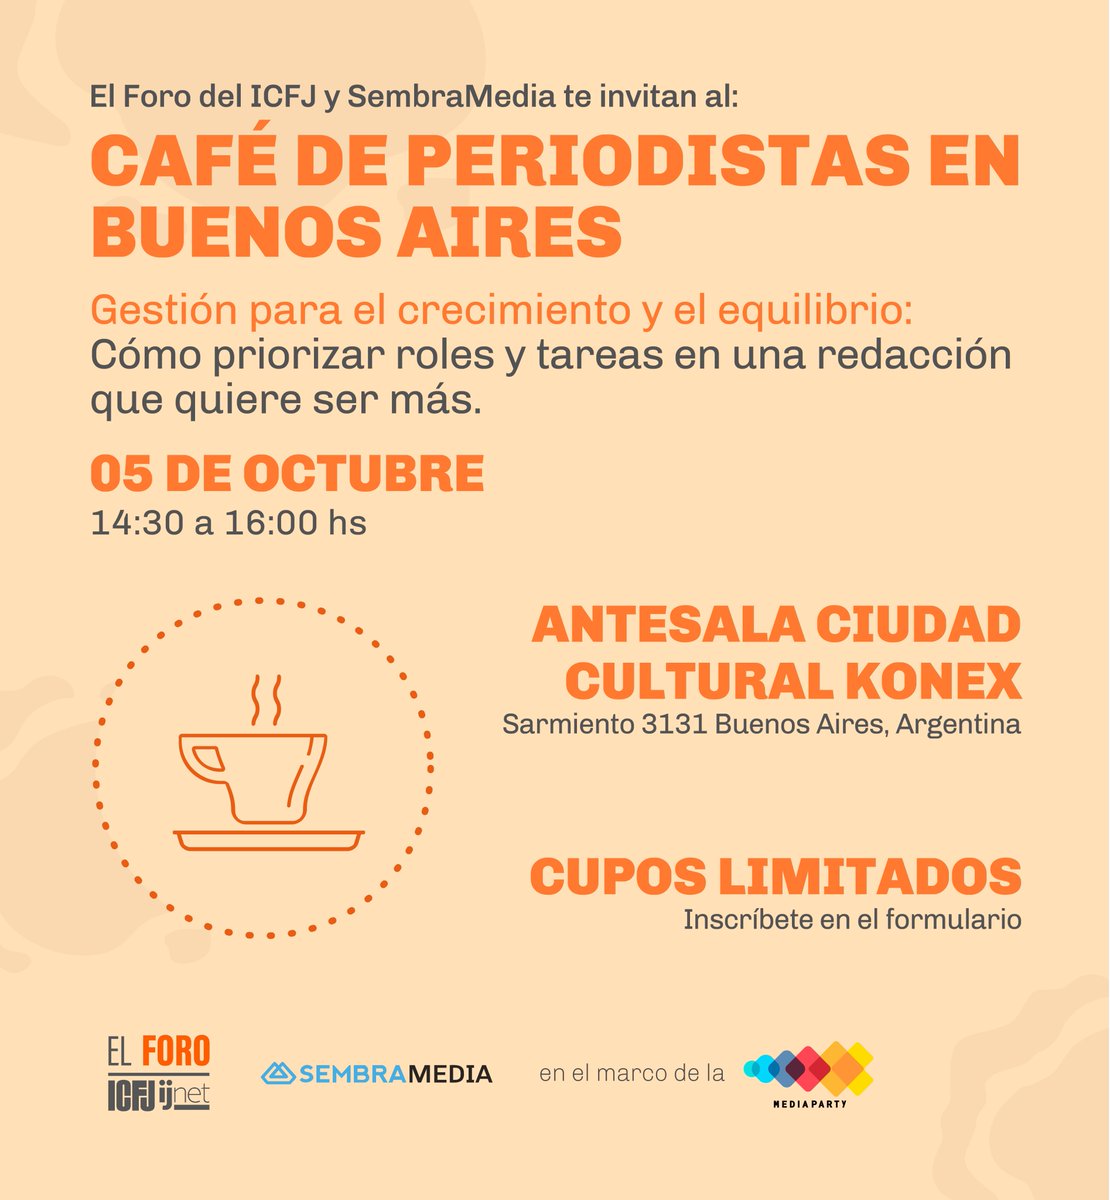 ¿Cómo te gusta el café? ☕✨ Mañana tomamos uno y hablamos de periodismo en Buenos Aires 🇦🇷. Súmate al Café para Periodistas, un hermoso evento exclusivo que organizamos junto a @ICFJ/@ijnetEs en el marco de la #MediaParty 🎉. Inscríbete aquí 👉 bit.ly/3Rxmvhg